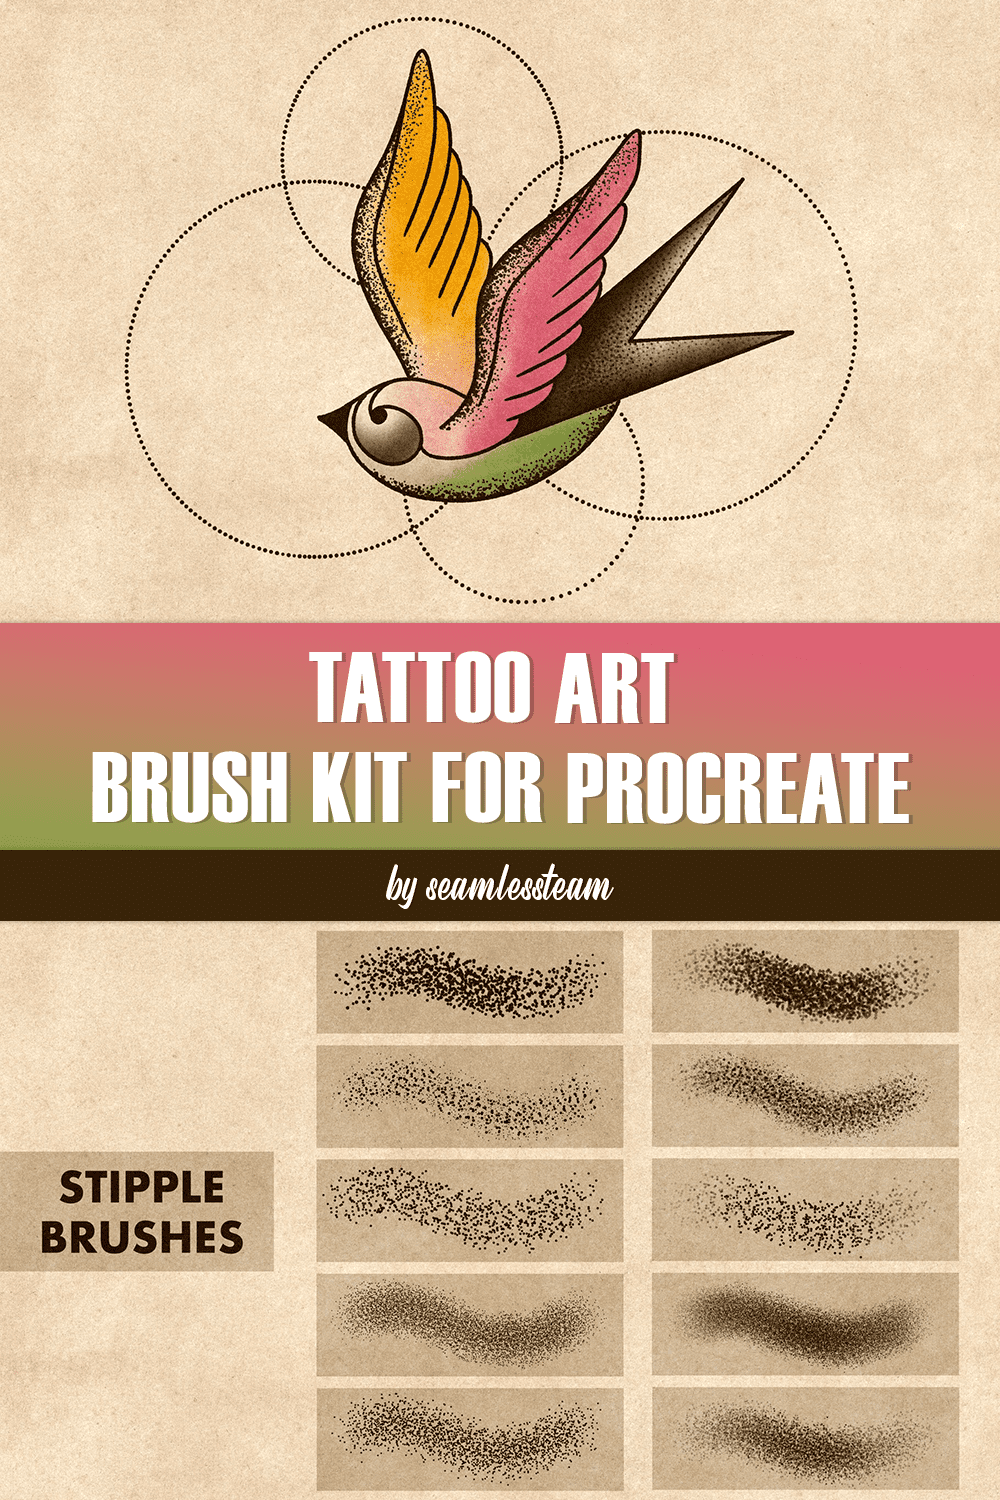 Tattoo Art Brush Kit For Procreate - pinterest image preview.